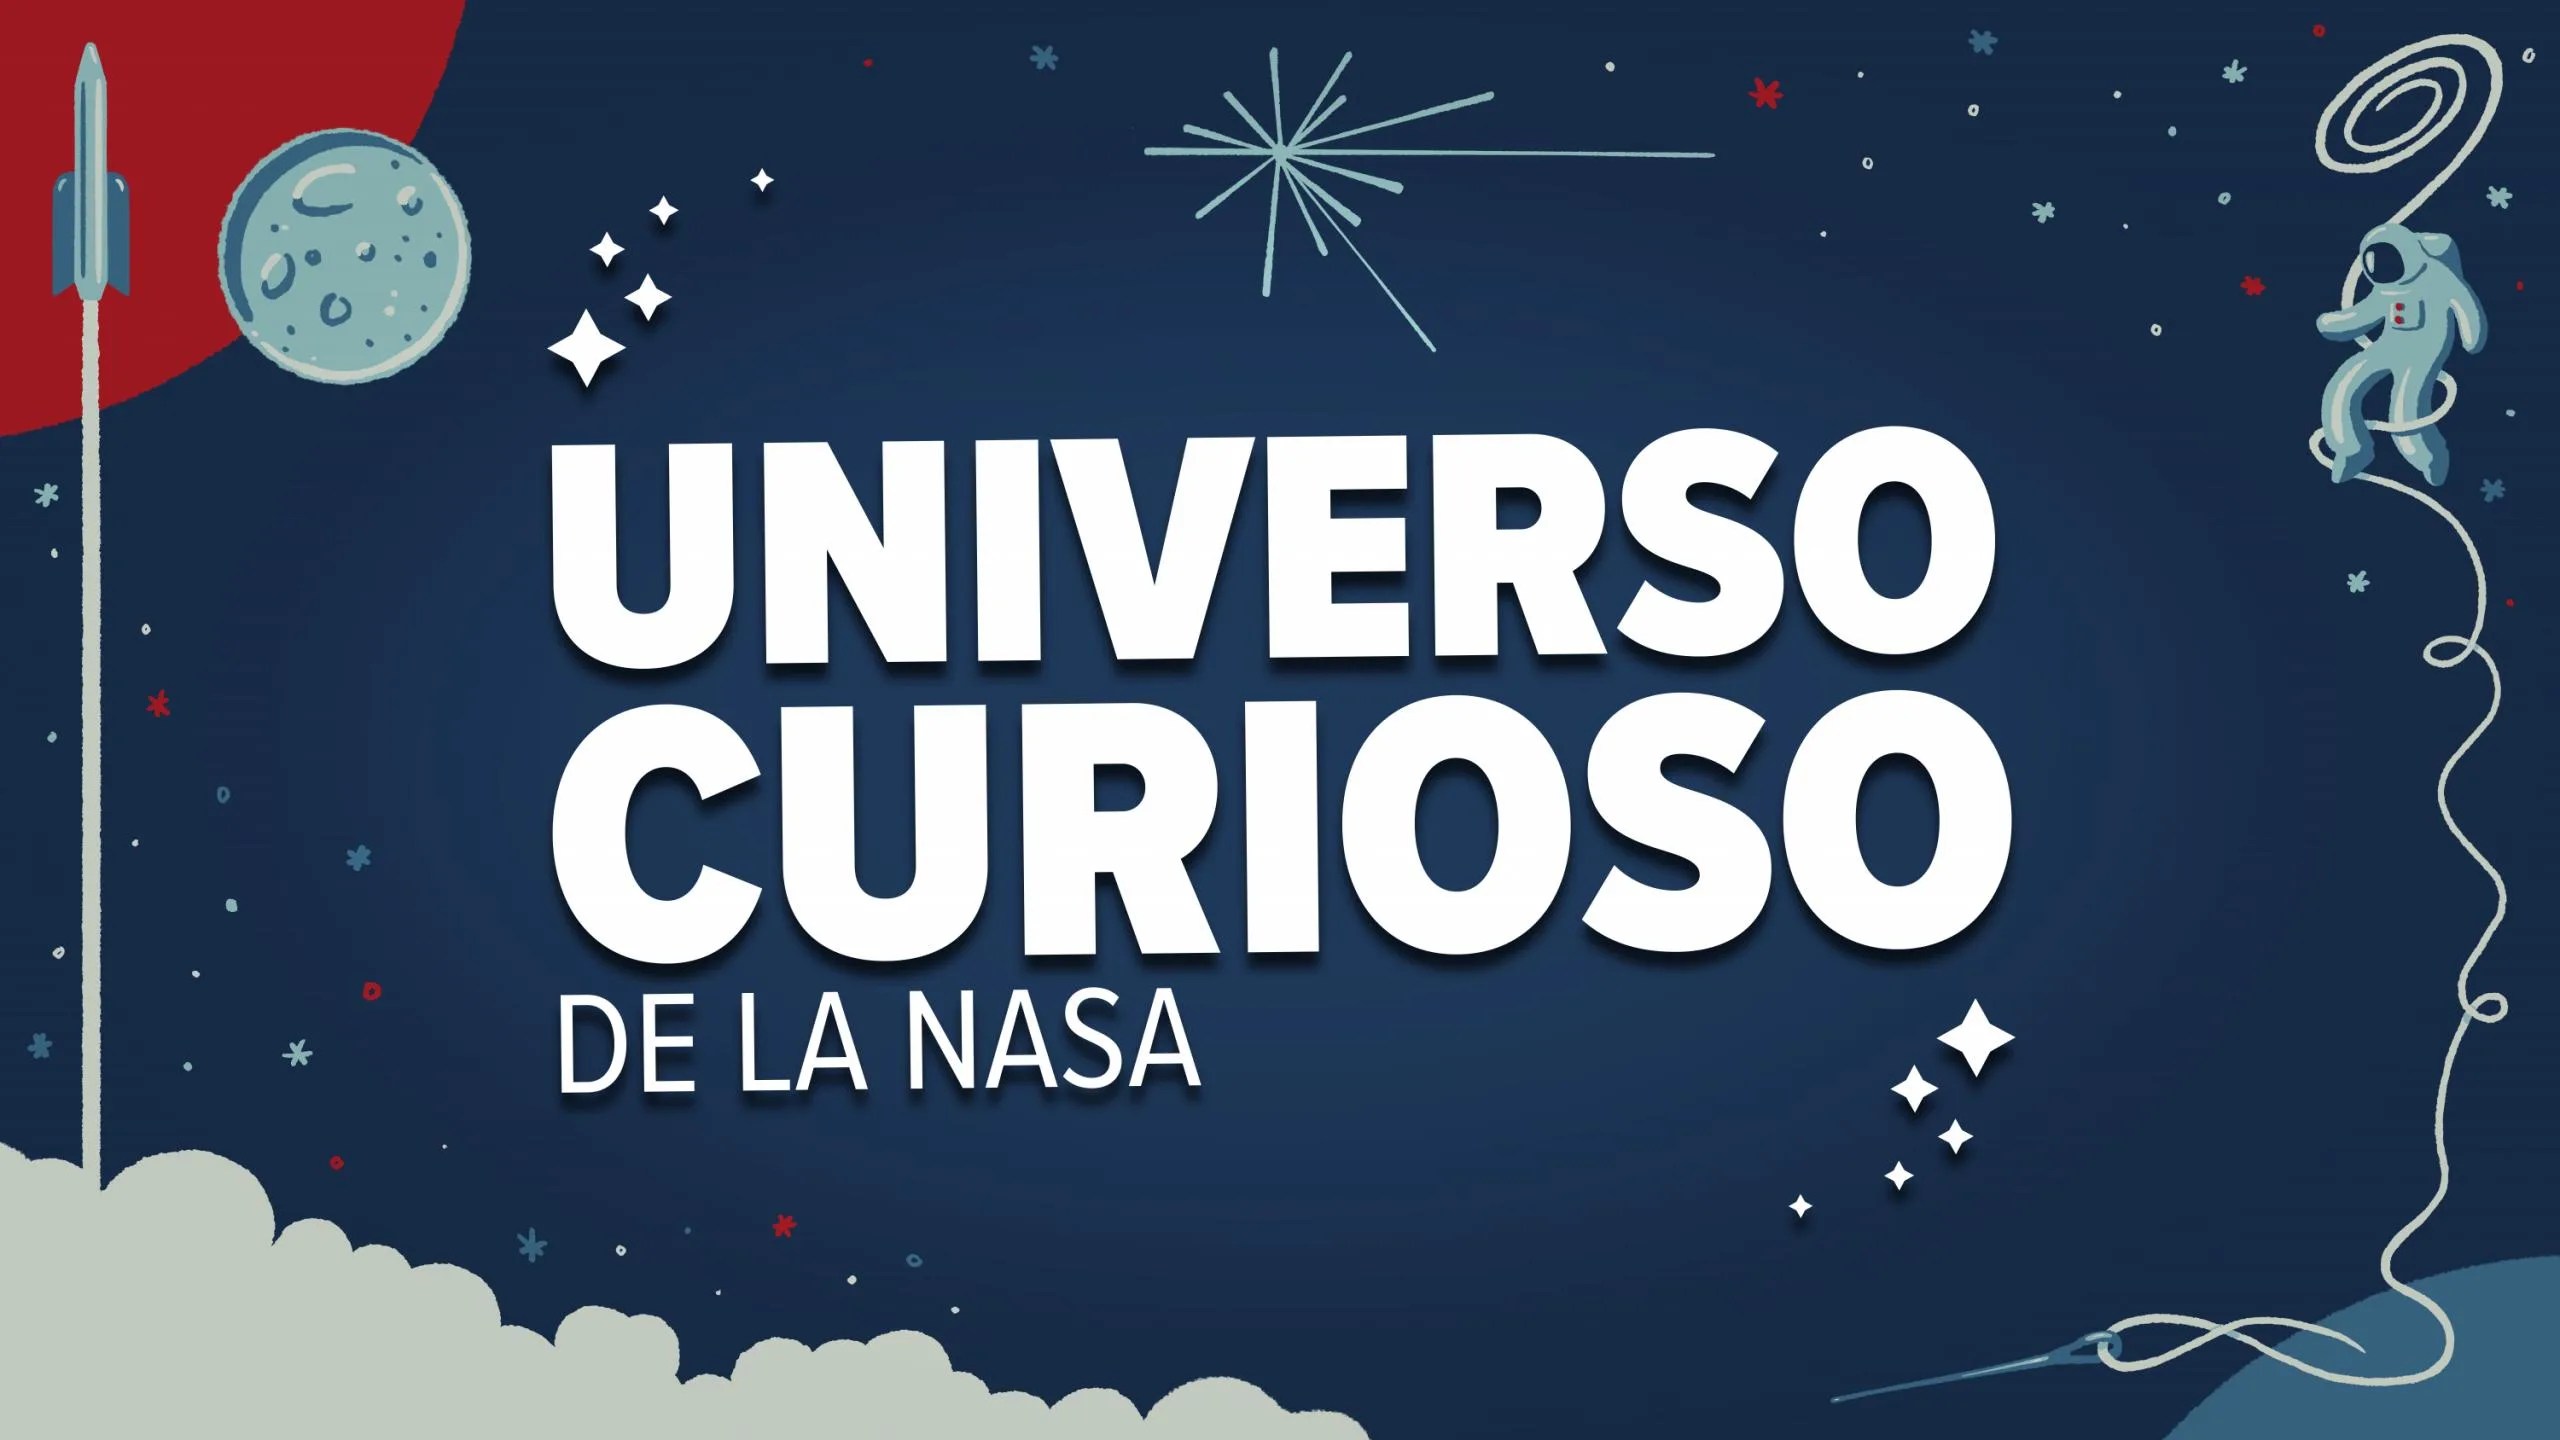 Iustración de portada del podcast Universo Curioso de la NASA en español